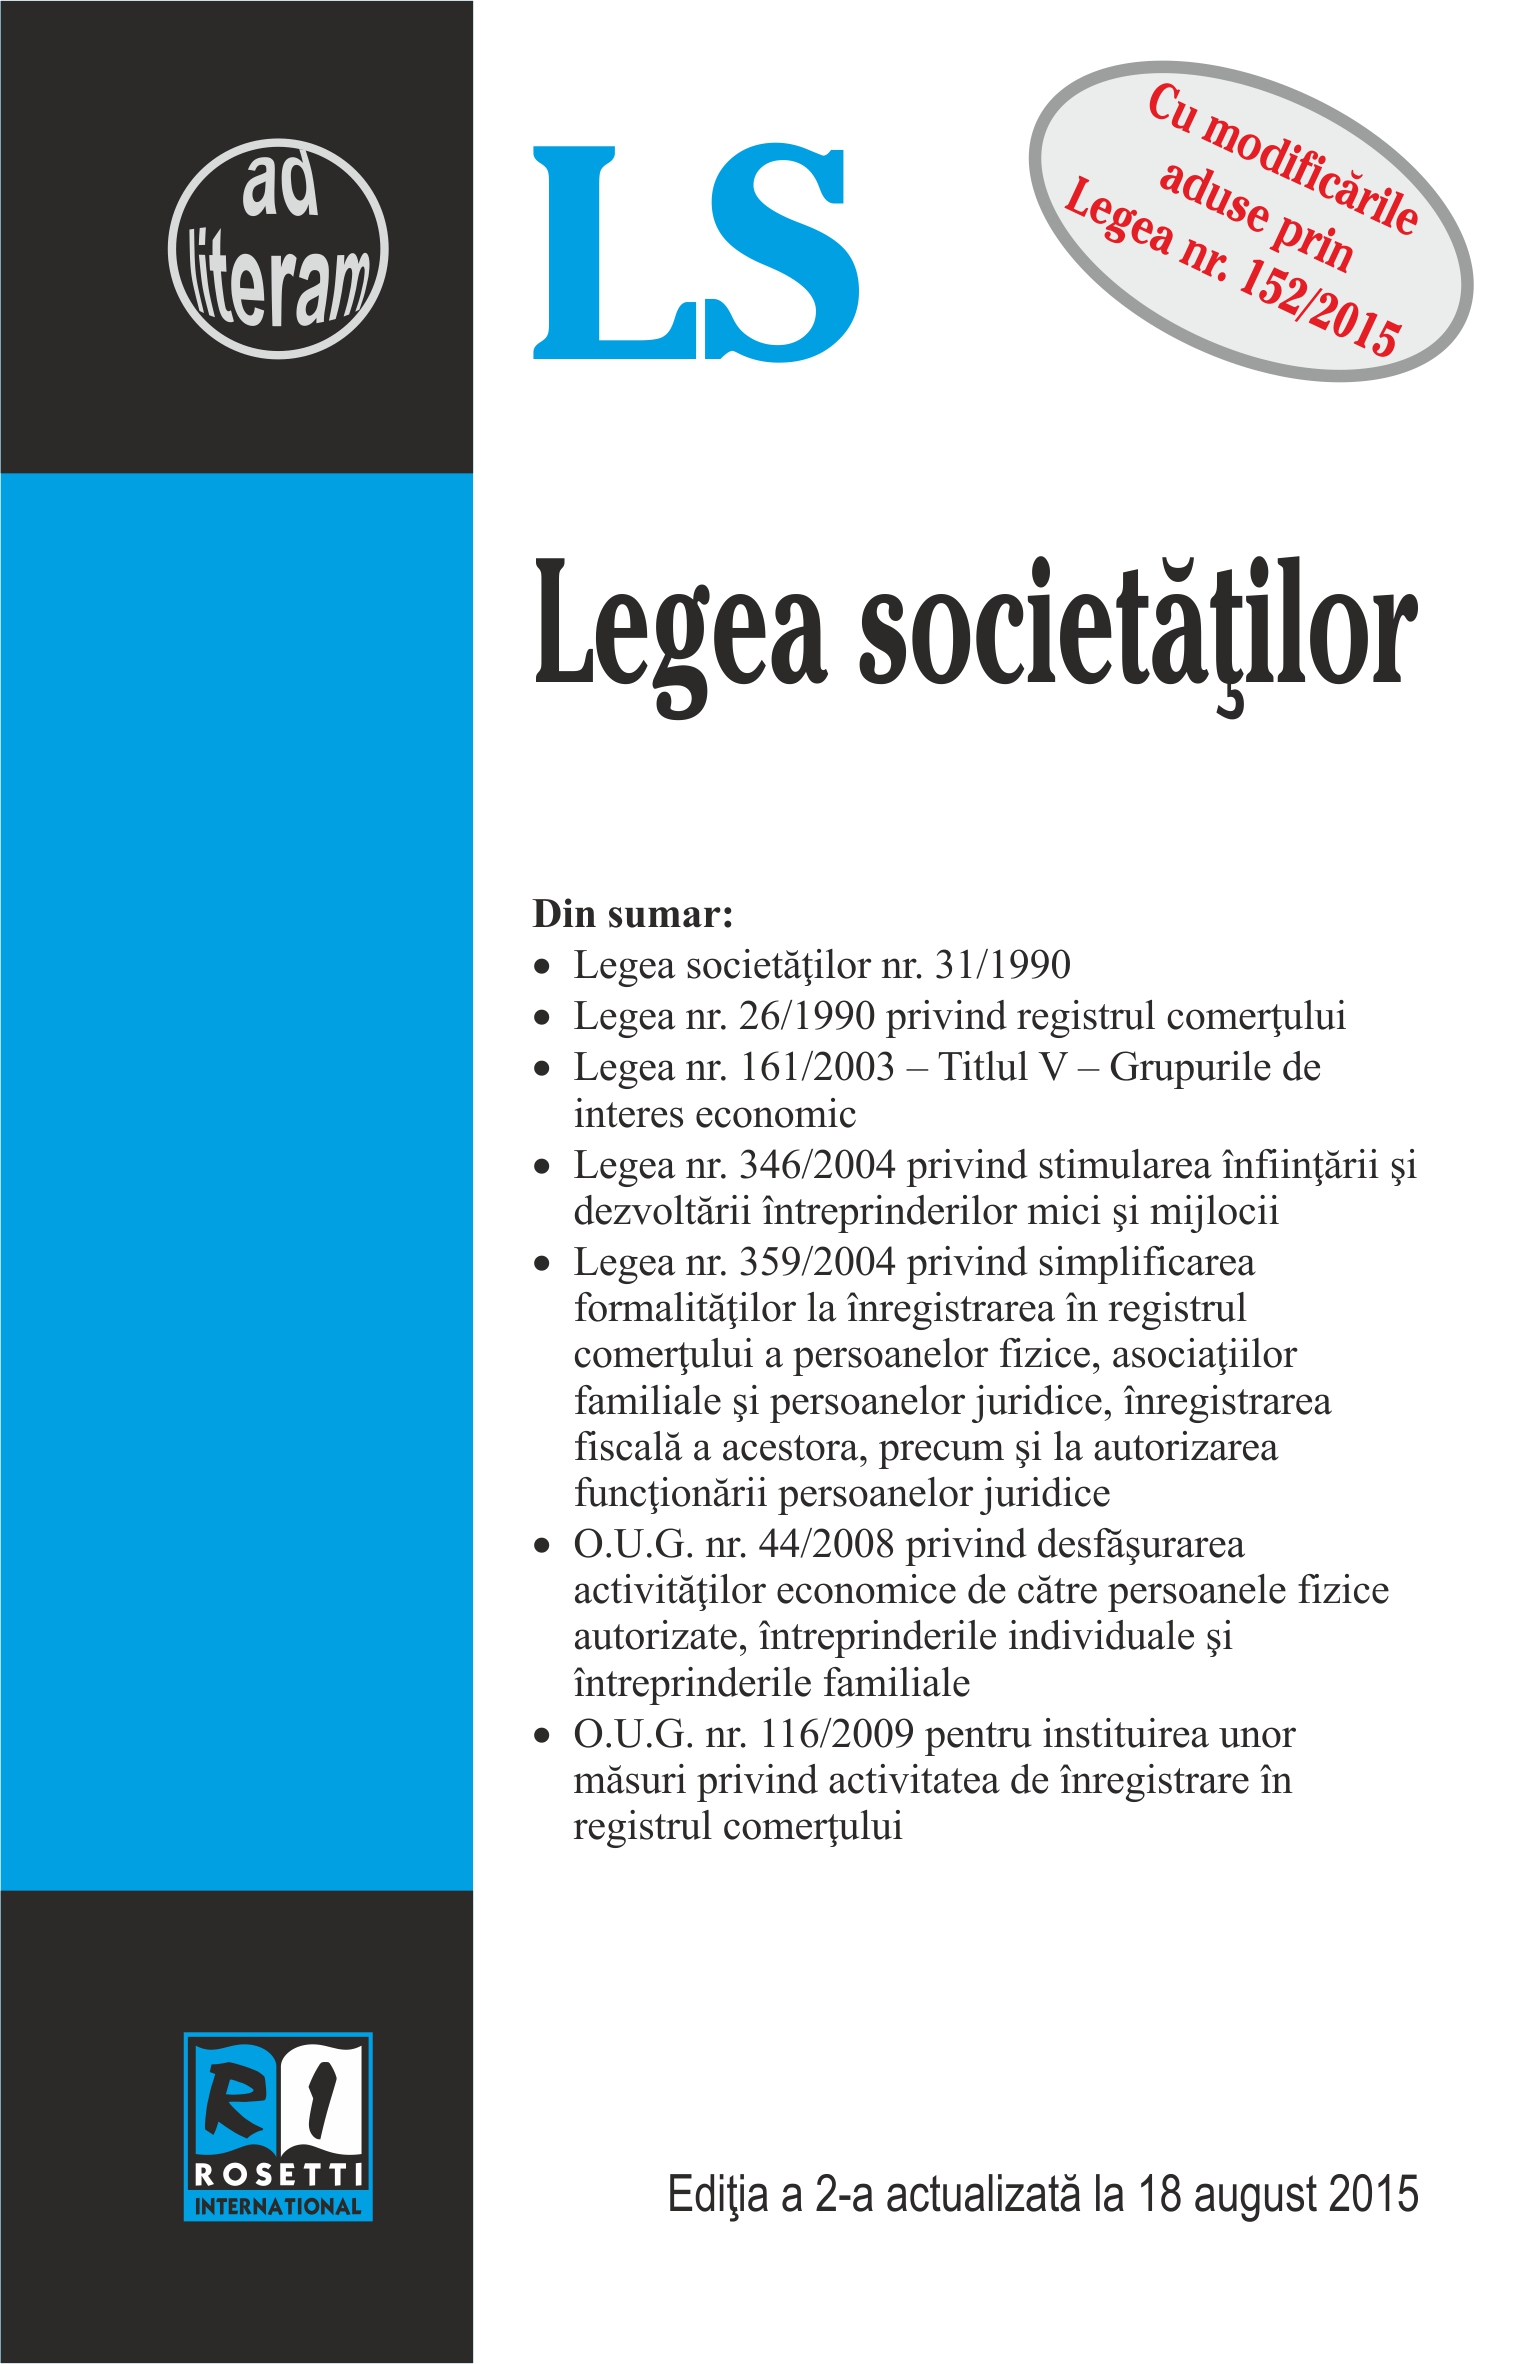 Legea Societatilor Act. 18 August 2015